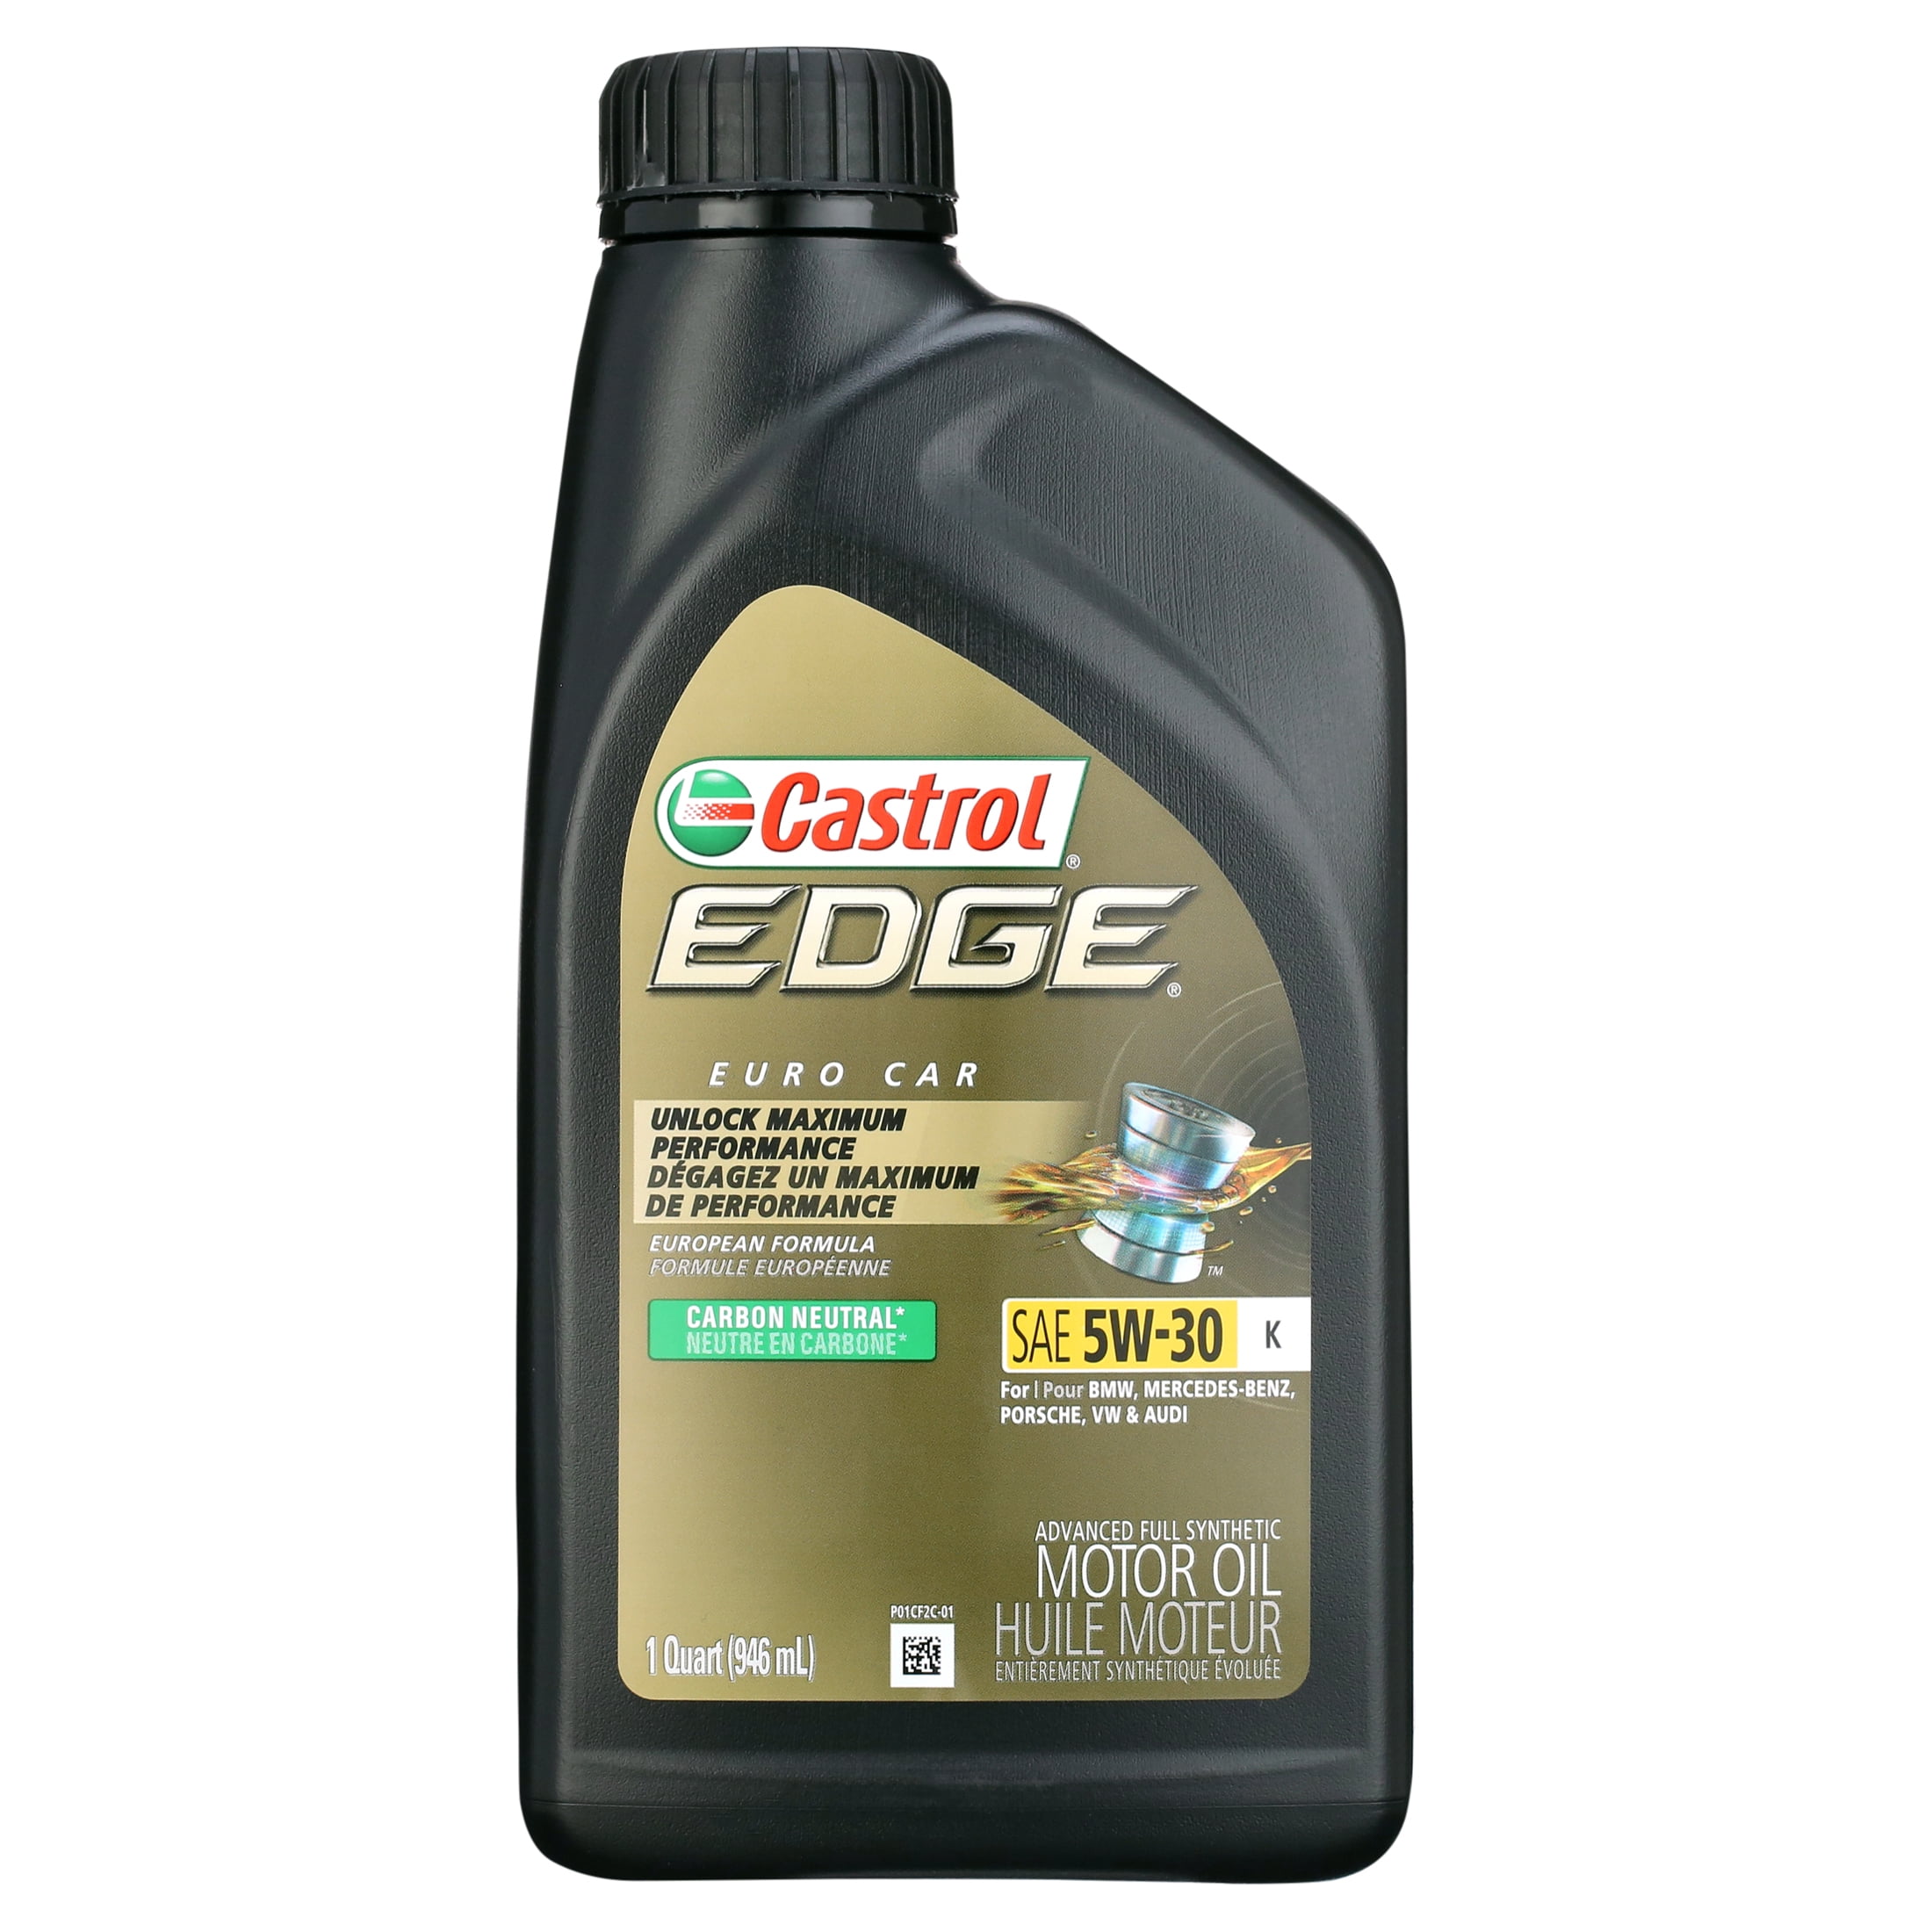 Castrol Edge 5W-30 K Advanced Full Synthetic Motor Oil, 1 Quart